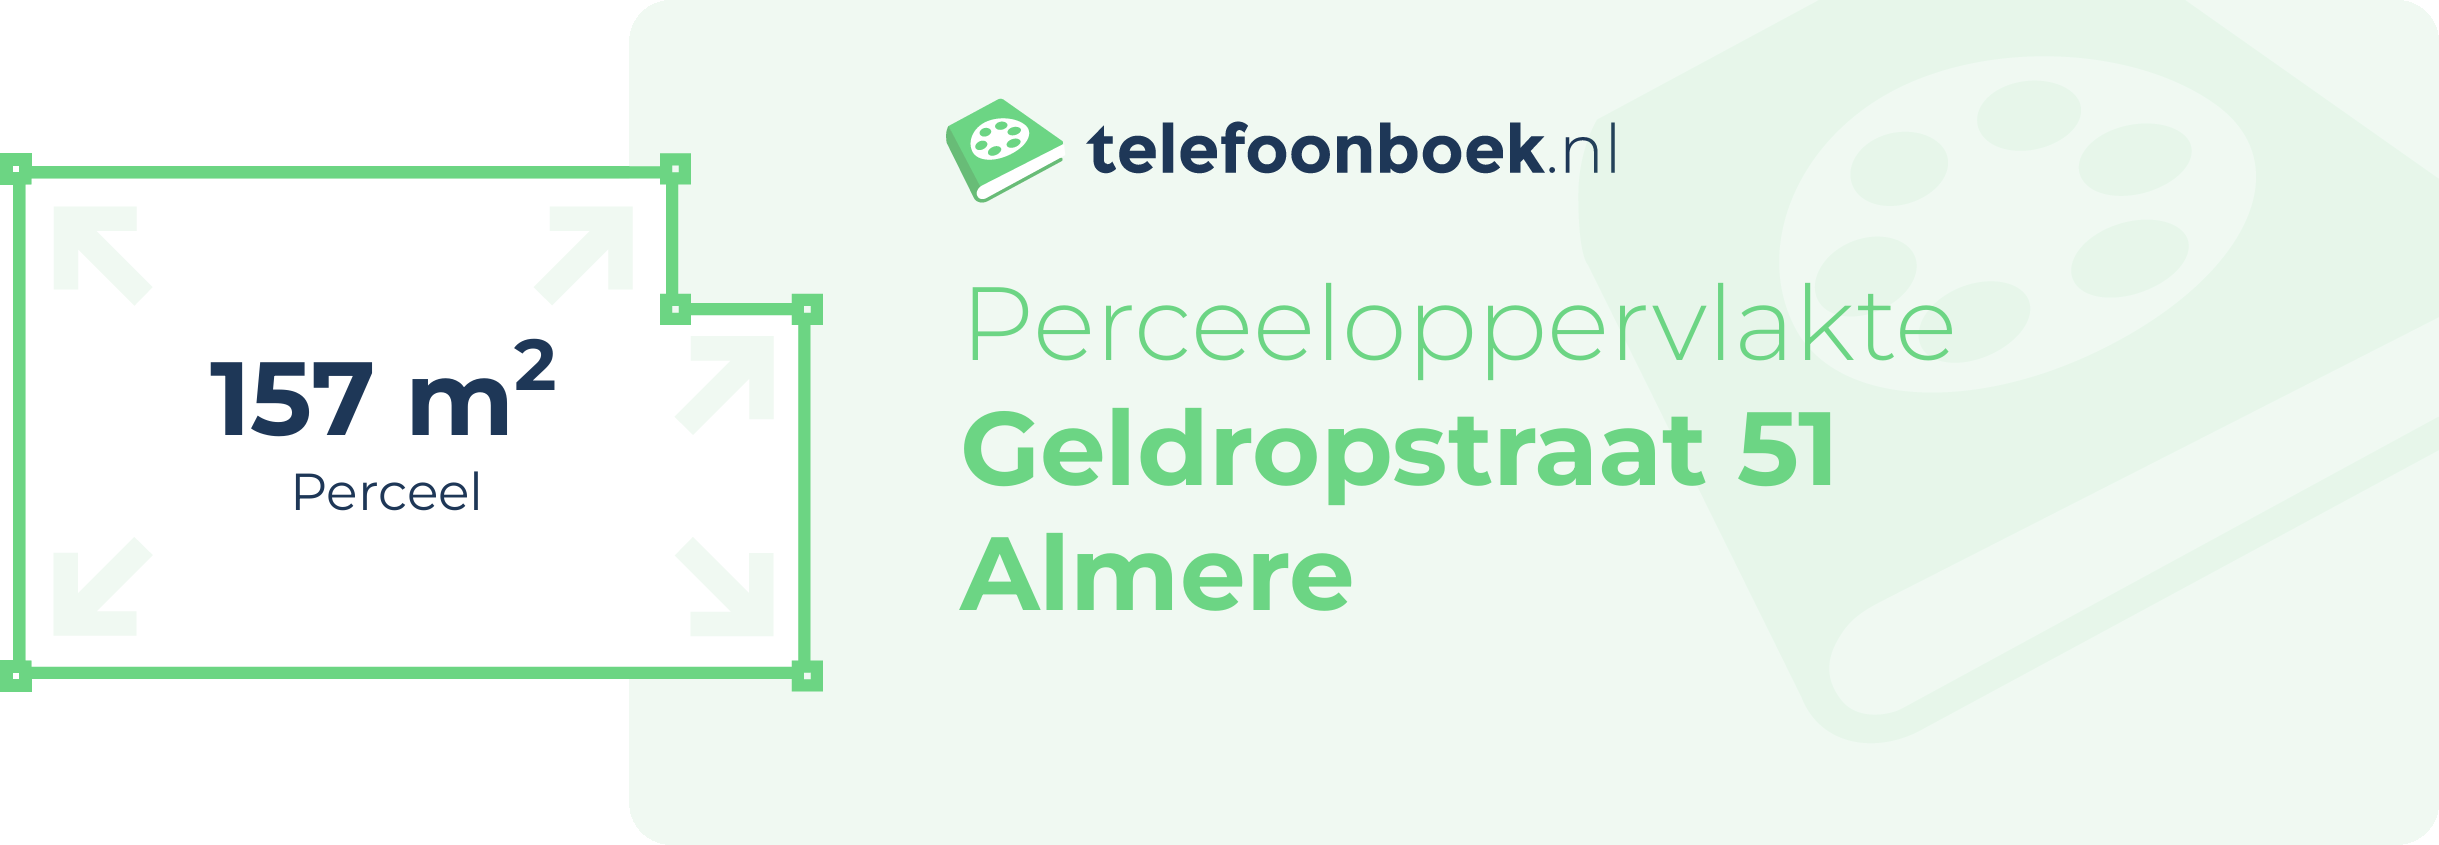 Perceeloppervlakte Geldropstraat 51 Almere